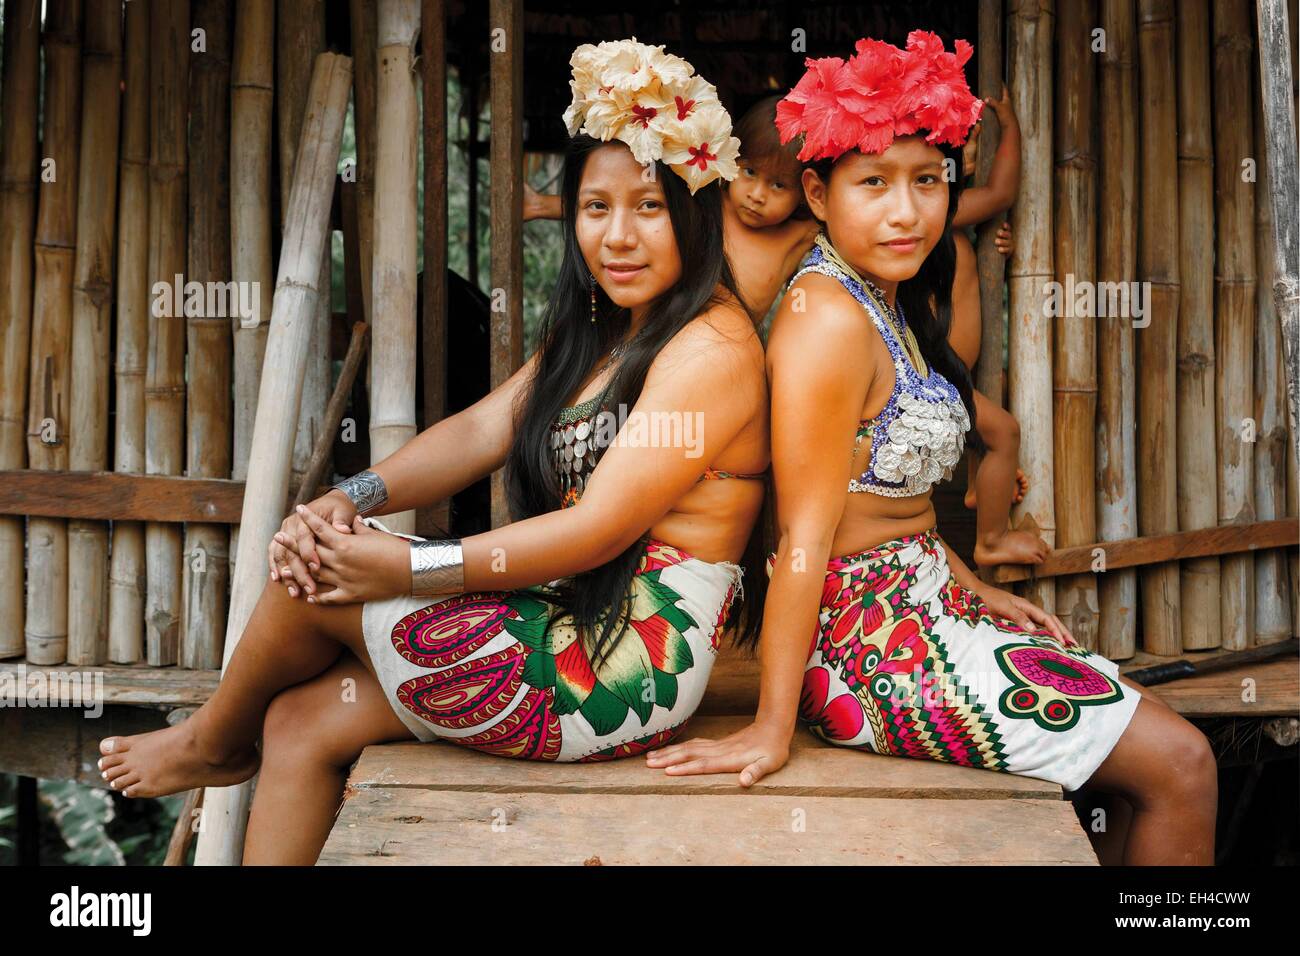 Panama, provincia di Darien, Parco Nazionale del Darién, classificato come patrimonio mondiale dall UNESCO, Embera comunità indigena, ritratto di due giovani ragazze indigene Embera Foto Stock